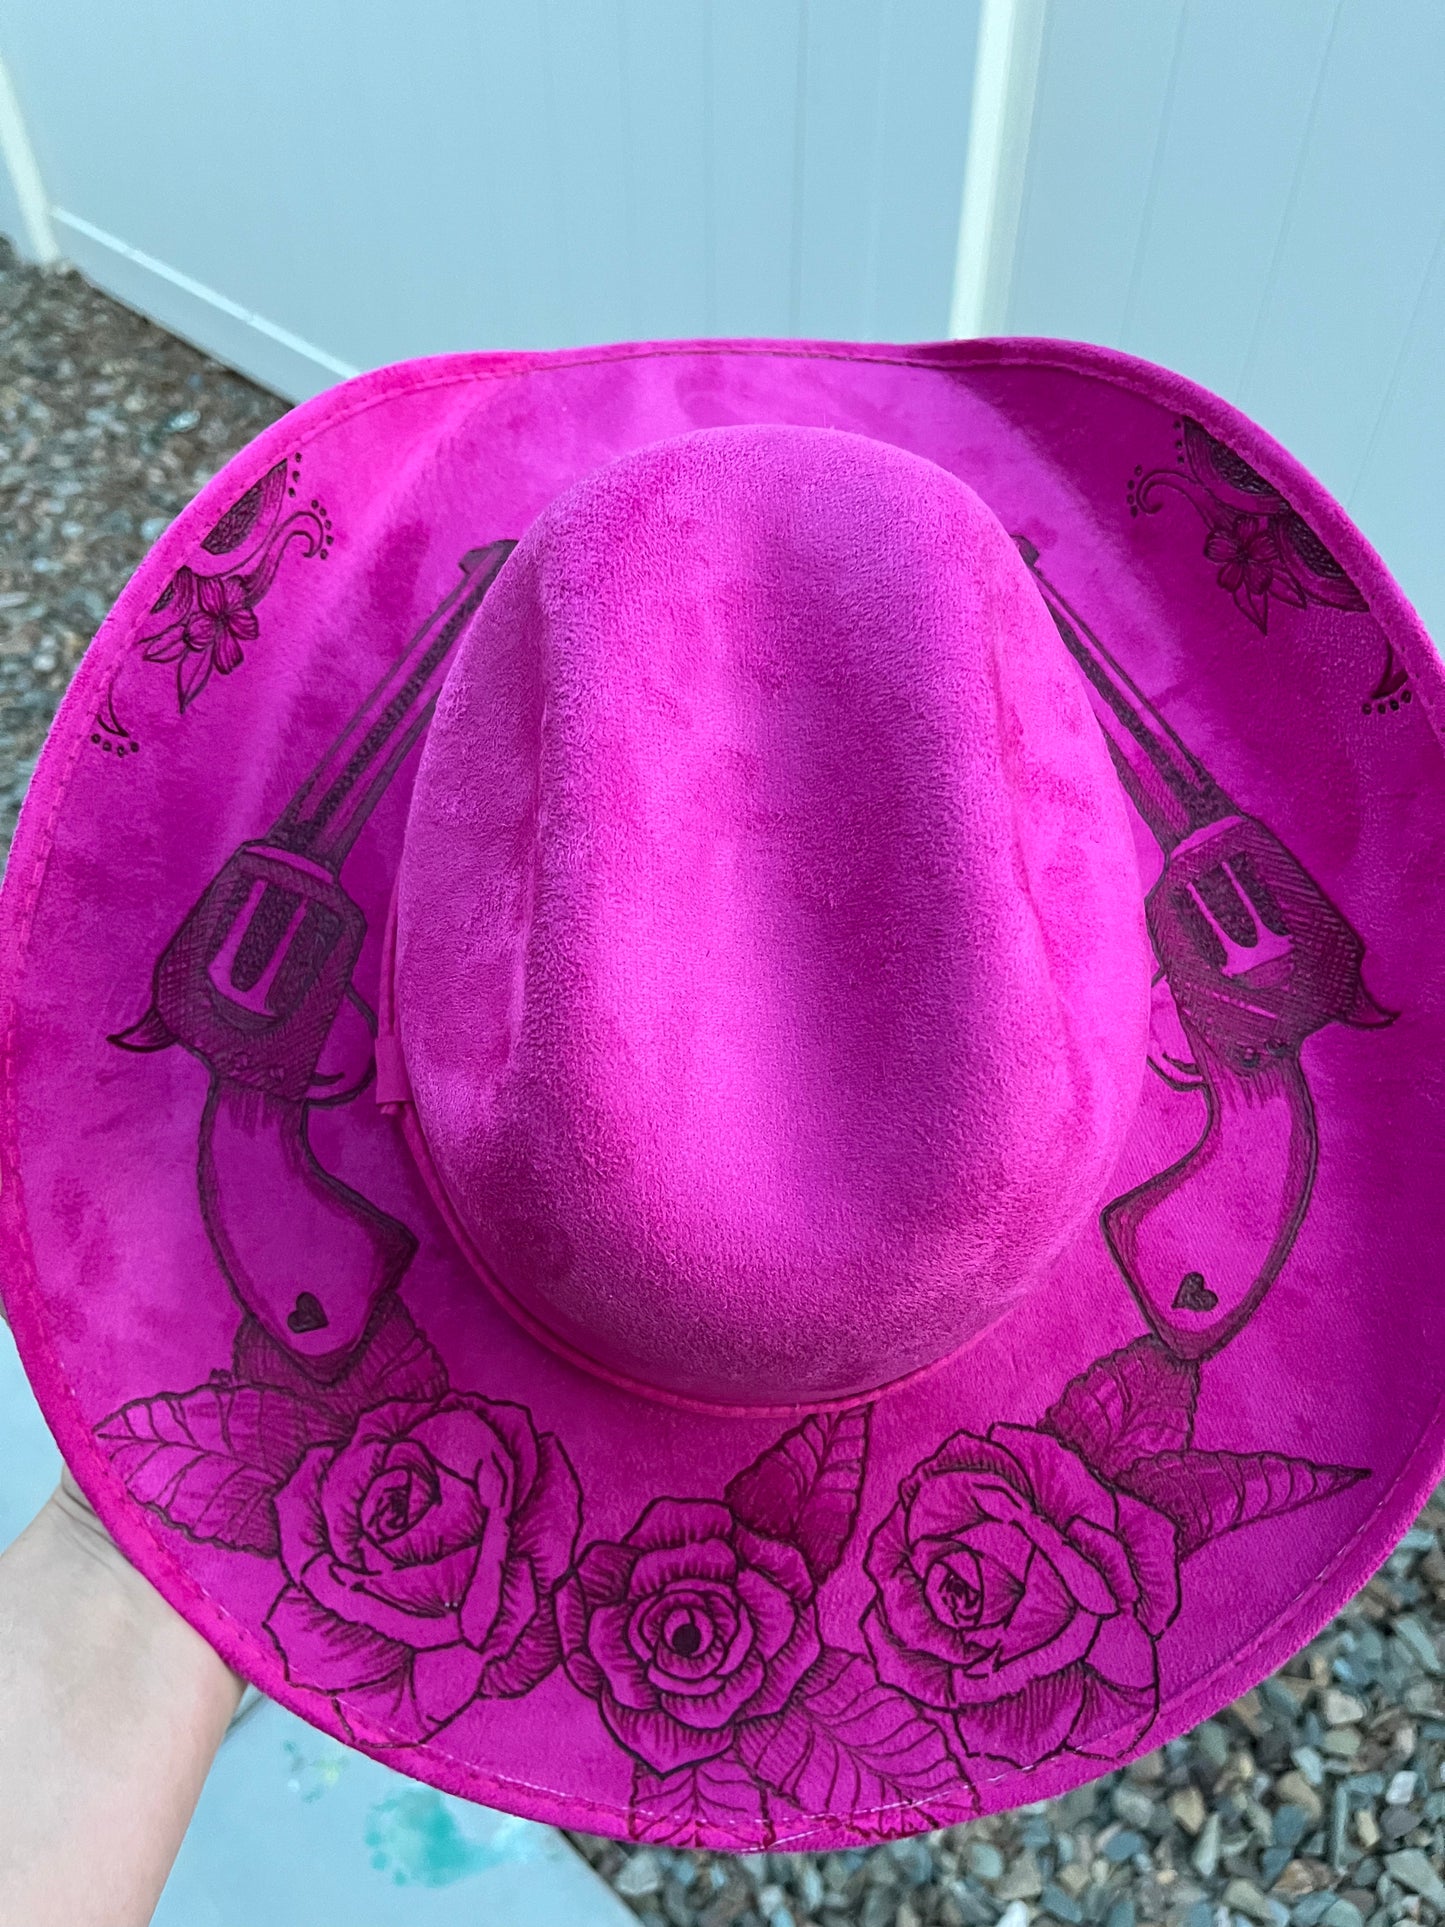 Pink revolver gun rose floral burned suede wide brim cowboy rancher hat